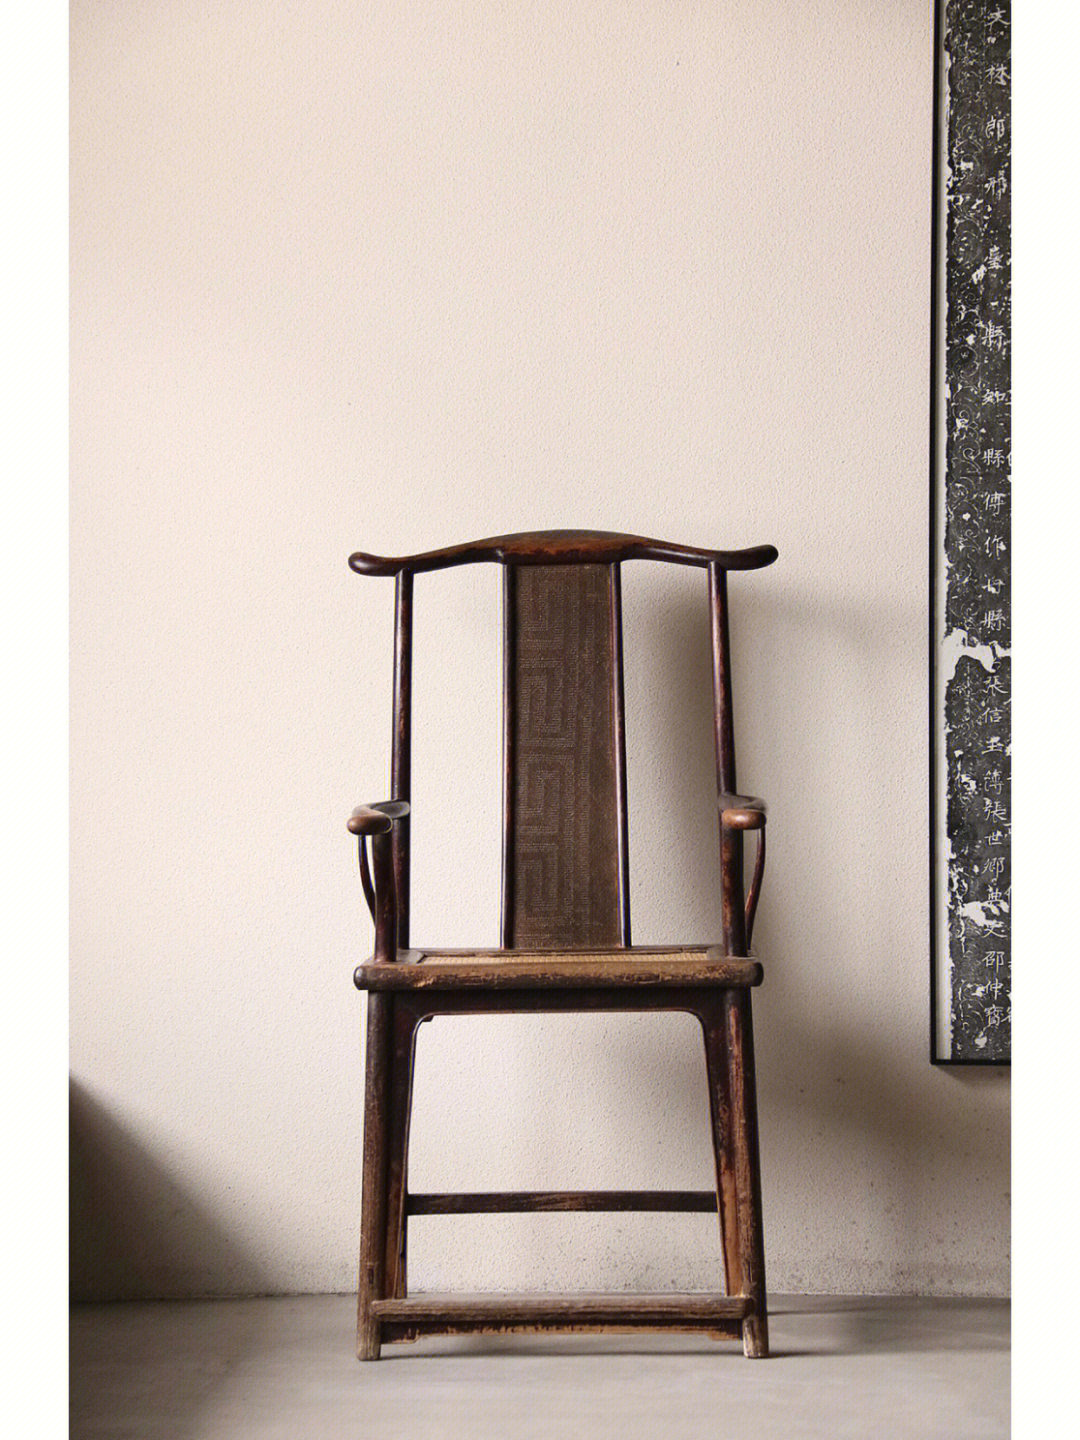 四出头官帽椅为明式家具中的出类拔萃之作, 其造型样式鲜明, 点线并